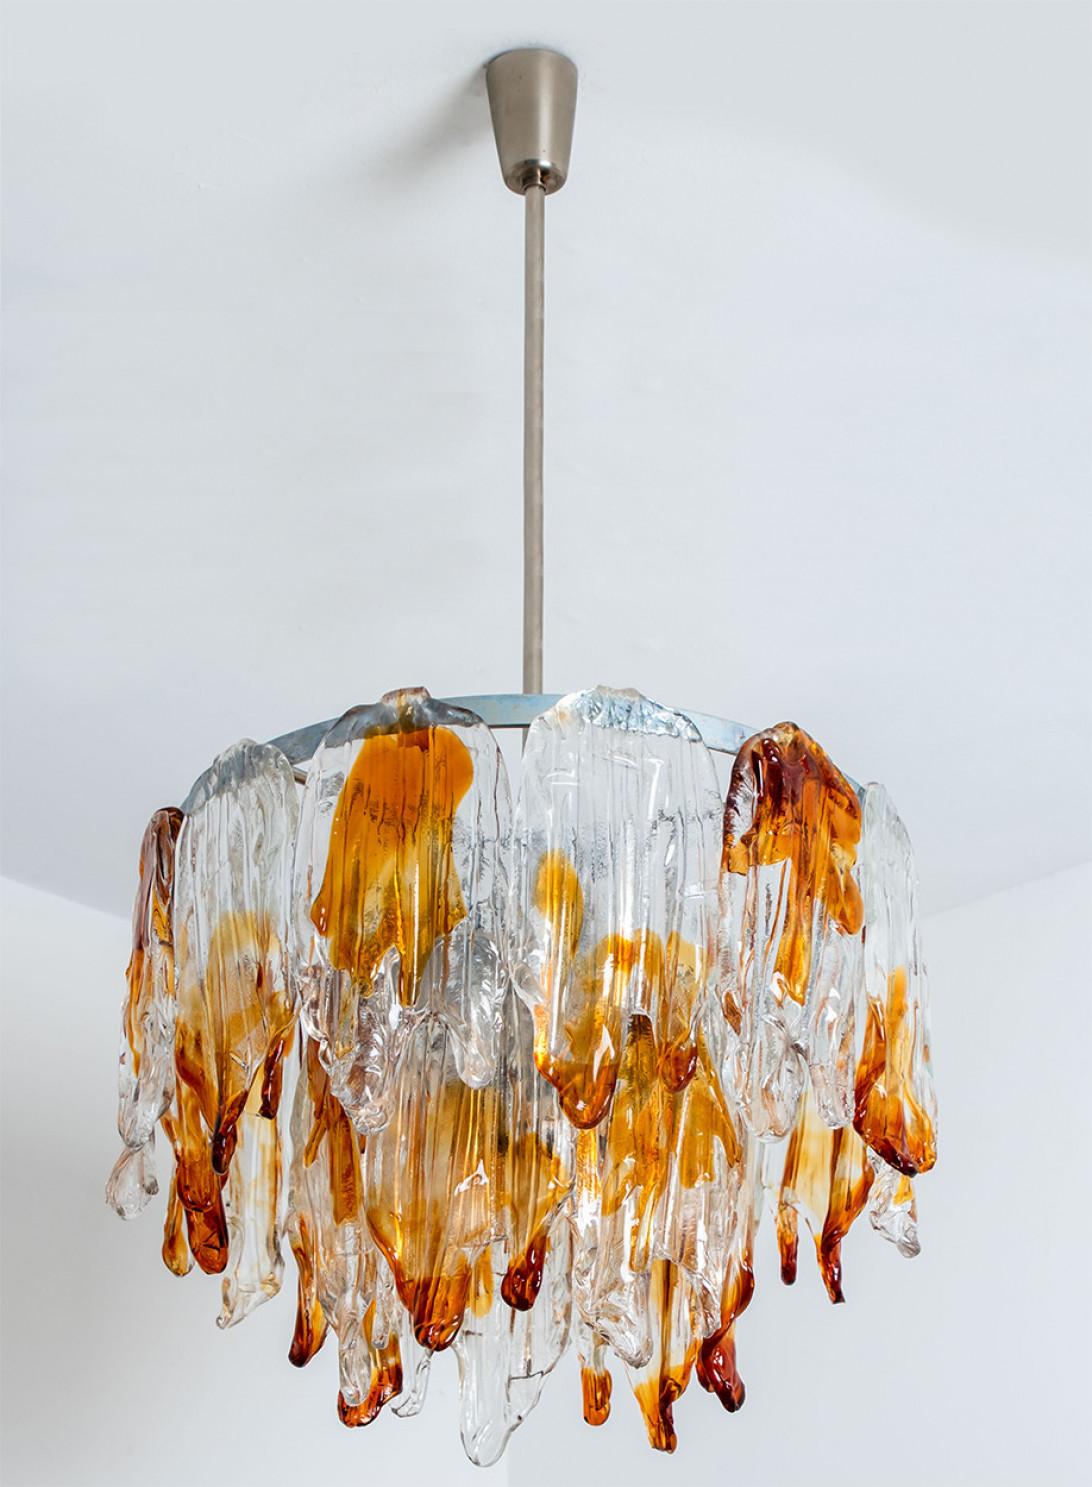 Cet élégant lustre en verre de Murano a été conçu et fabriqué par Eleg, en Italie, dans les années 1960.
Le lustre est composé d'une tige en chrome, suspendue au plafond, et d'abat-jours en verre orange et transparent, ressemblant à des feuilles